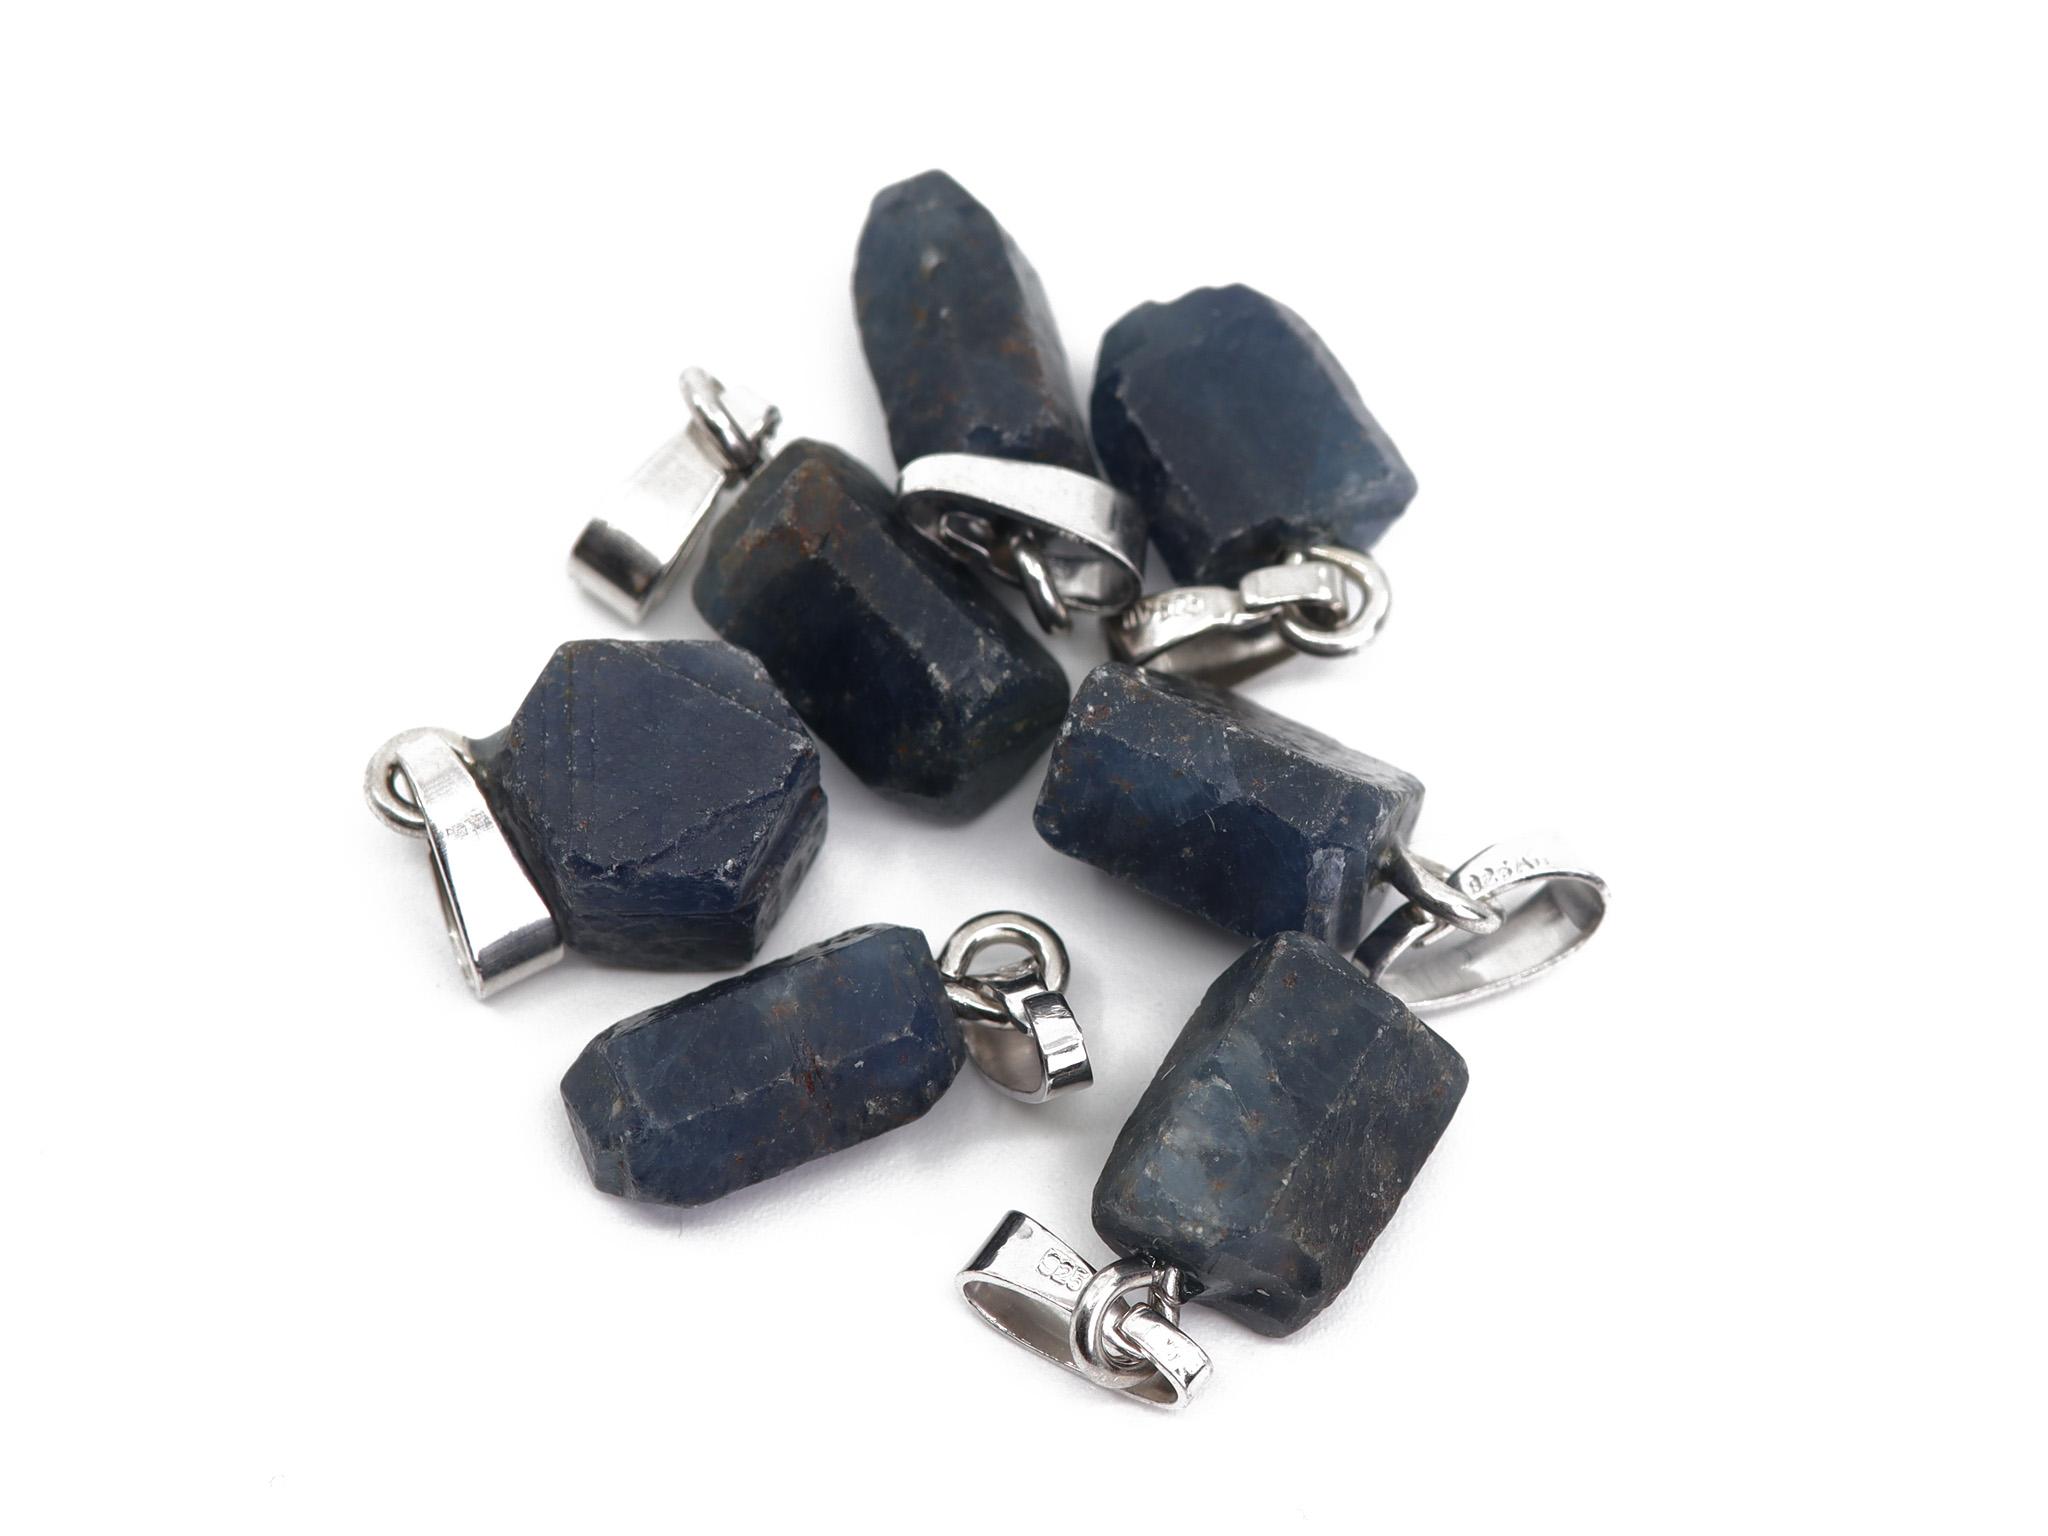 Saphir Naturkristall Anhänger mit 925er Silberöse - Edelstein / Heilstein - inkl. 1m Leder- oder Kunstleder Halsband (Schmuckstein)